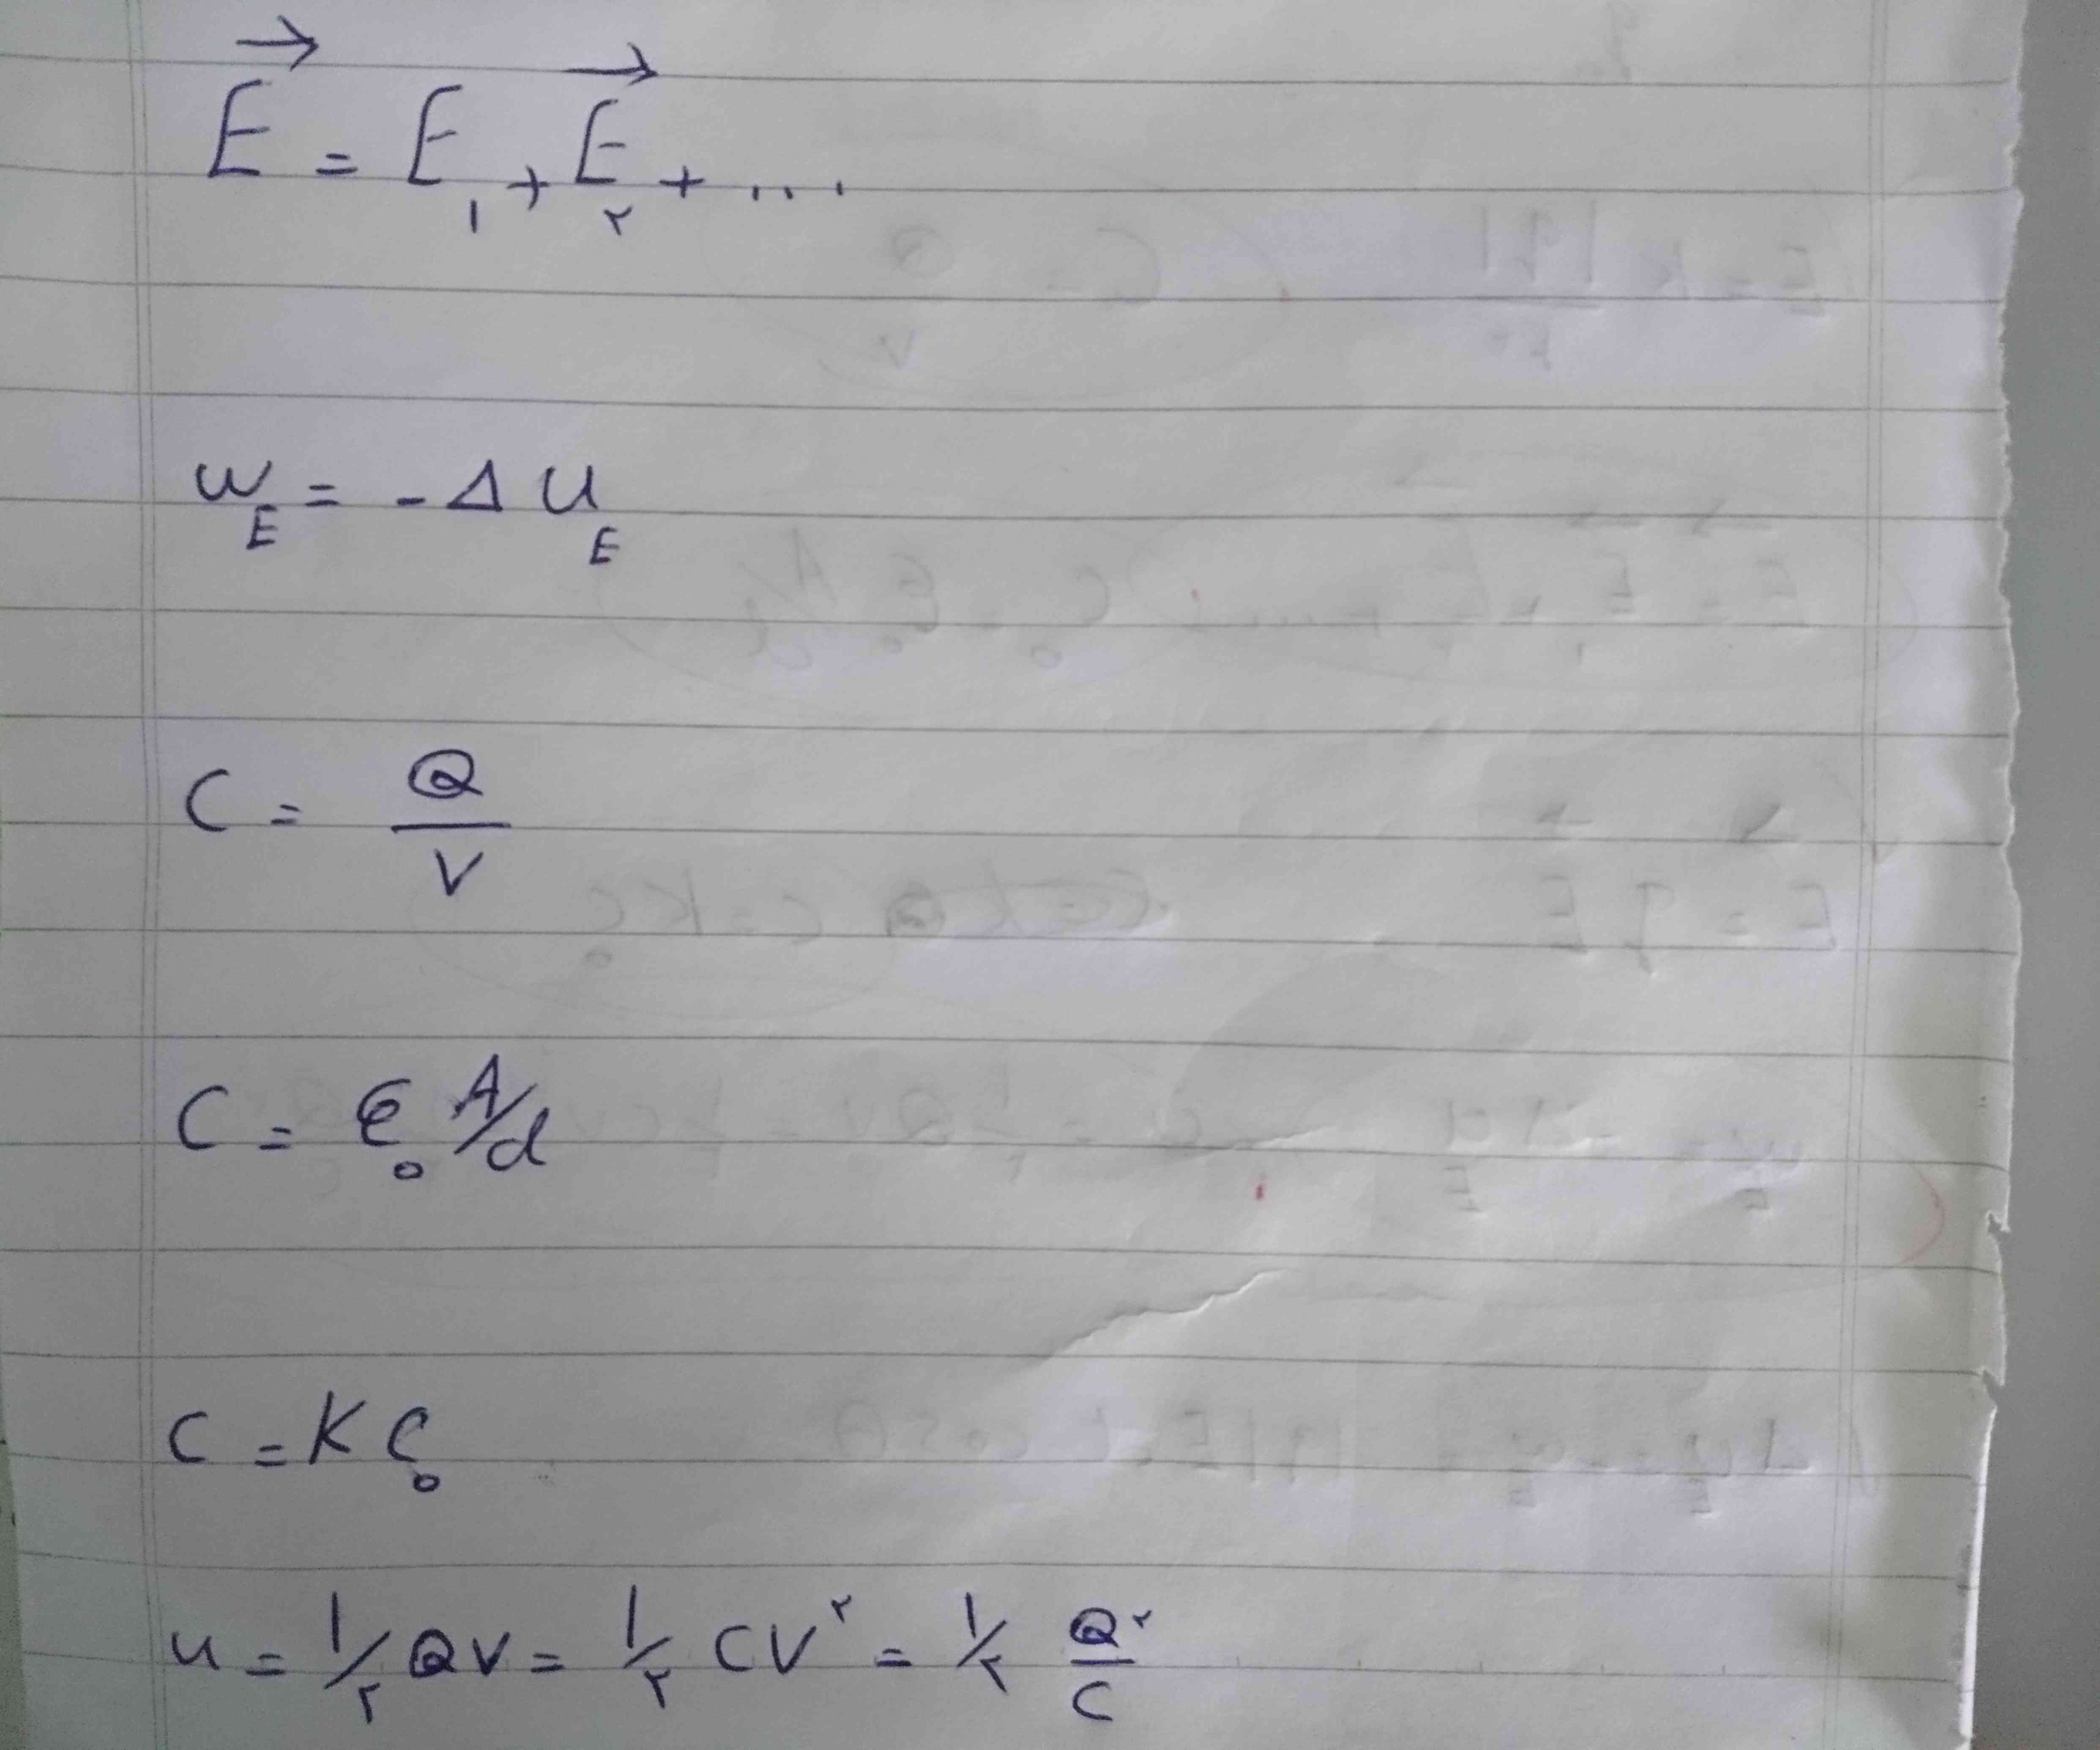 بچه ها کسی می تونه برام این فرمول ها رو توضیح بده مثلا بگه اینجا Qبه چه معناست؟؟؟ 